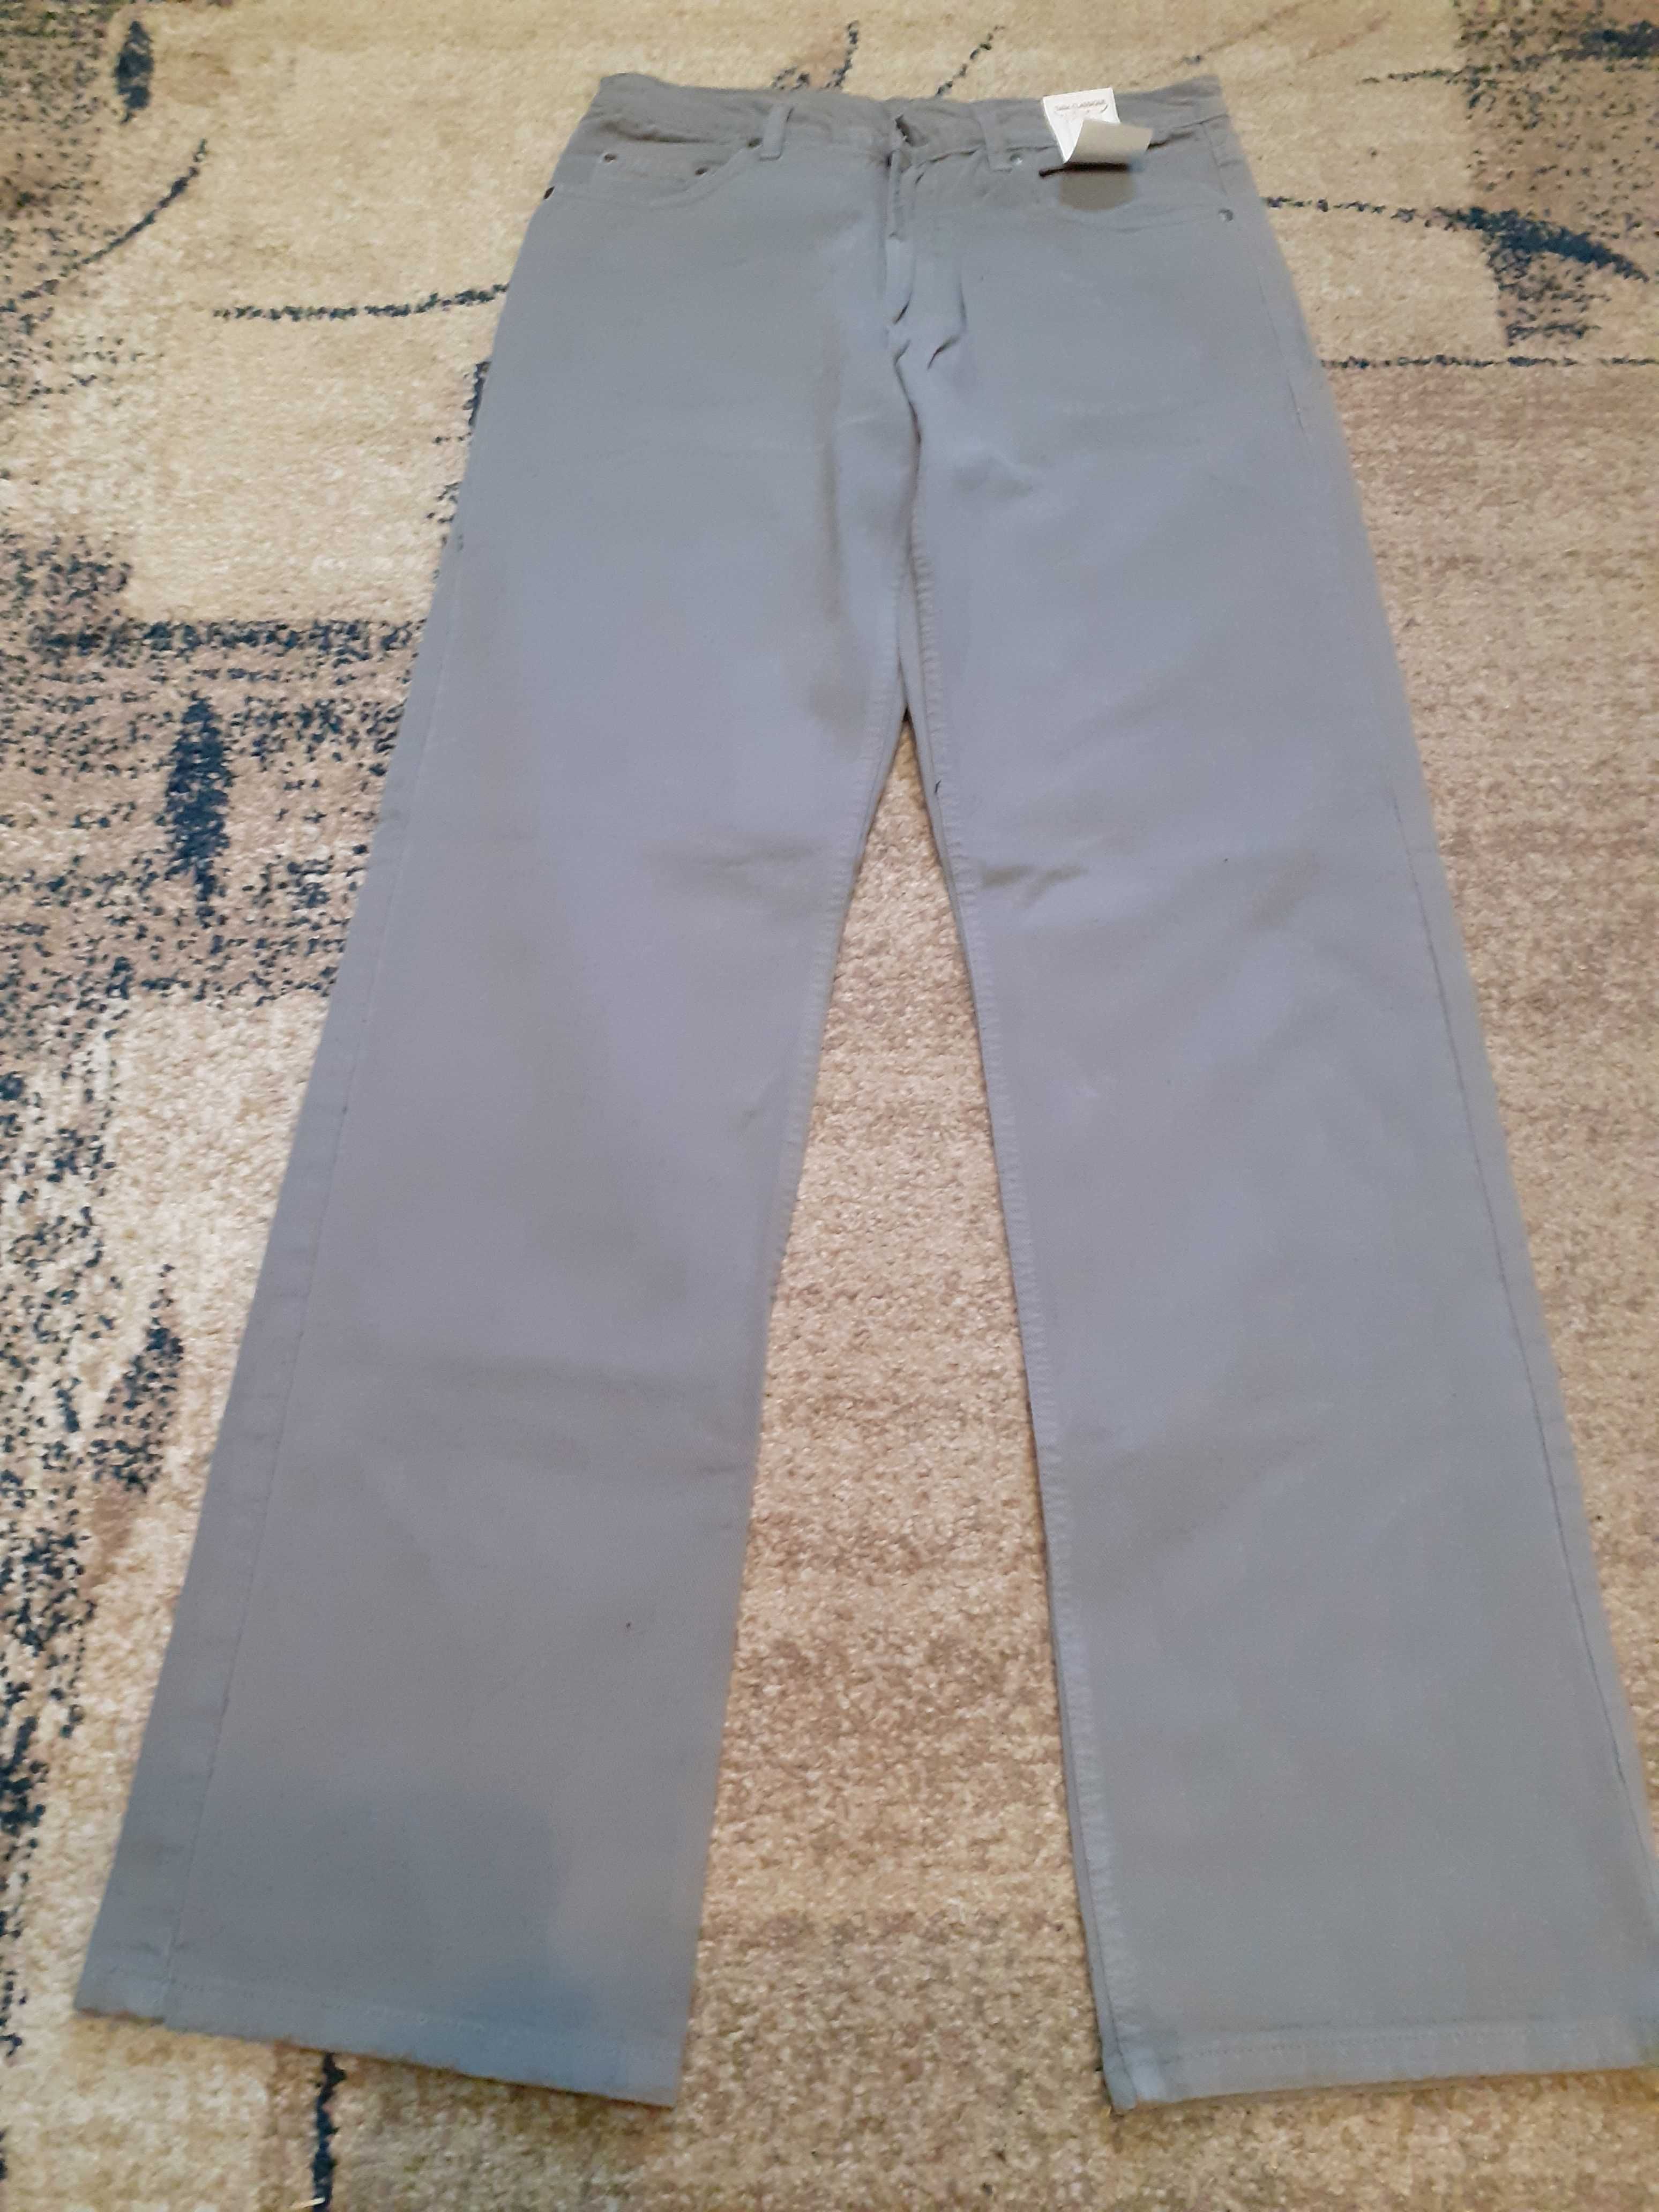 NOWE spodnie jensowe męskie (ROZMIAR 32) (SZARE)